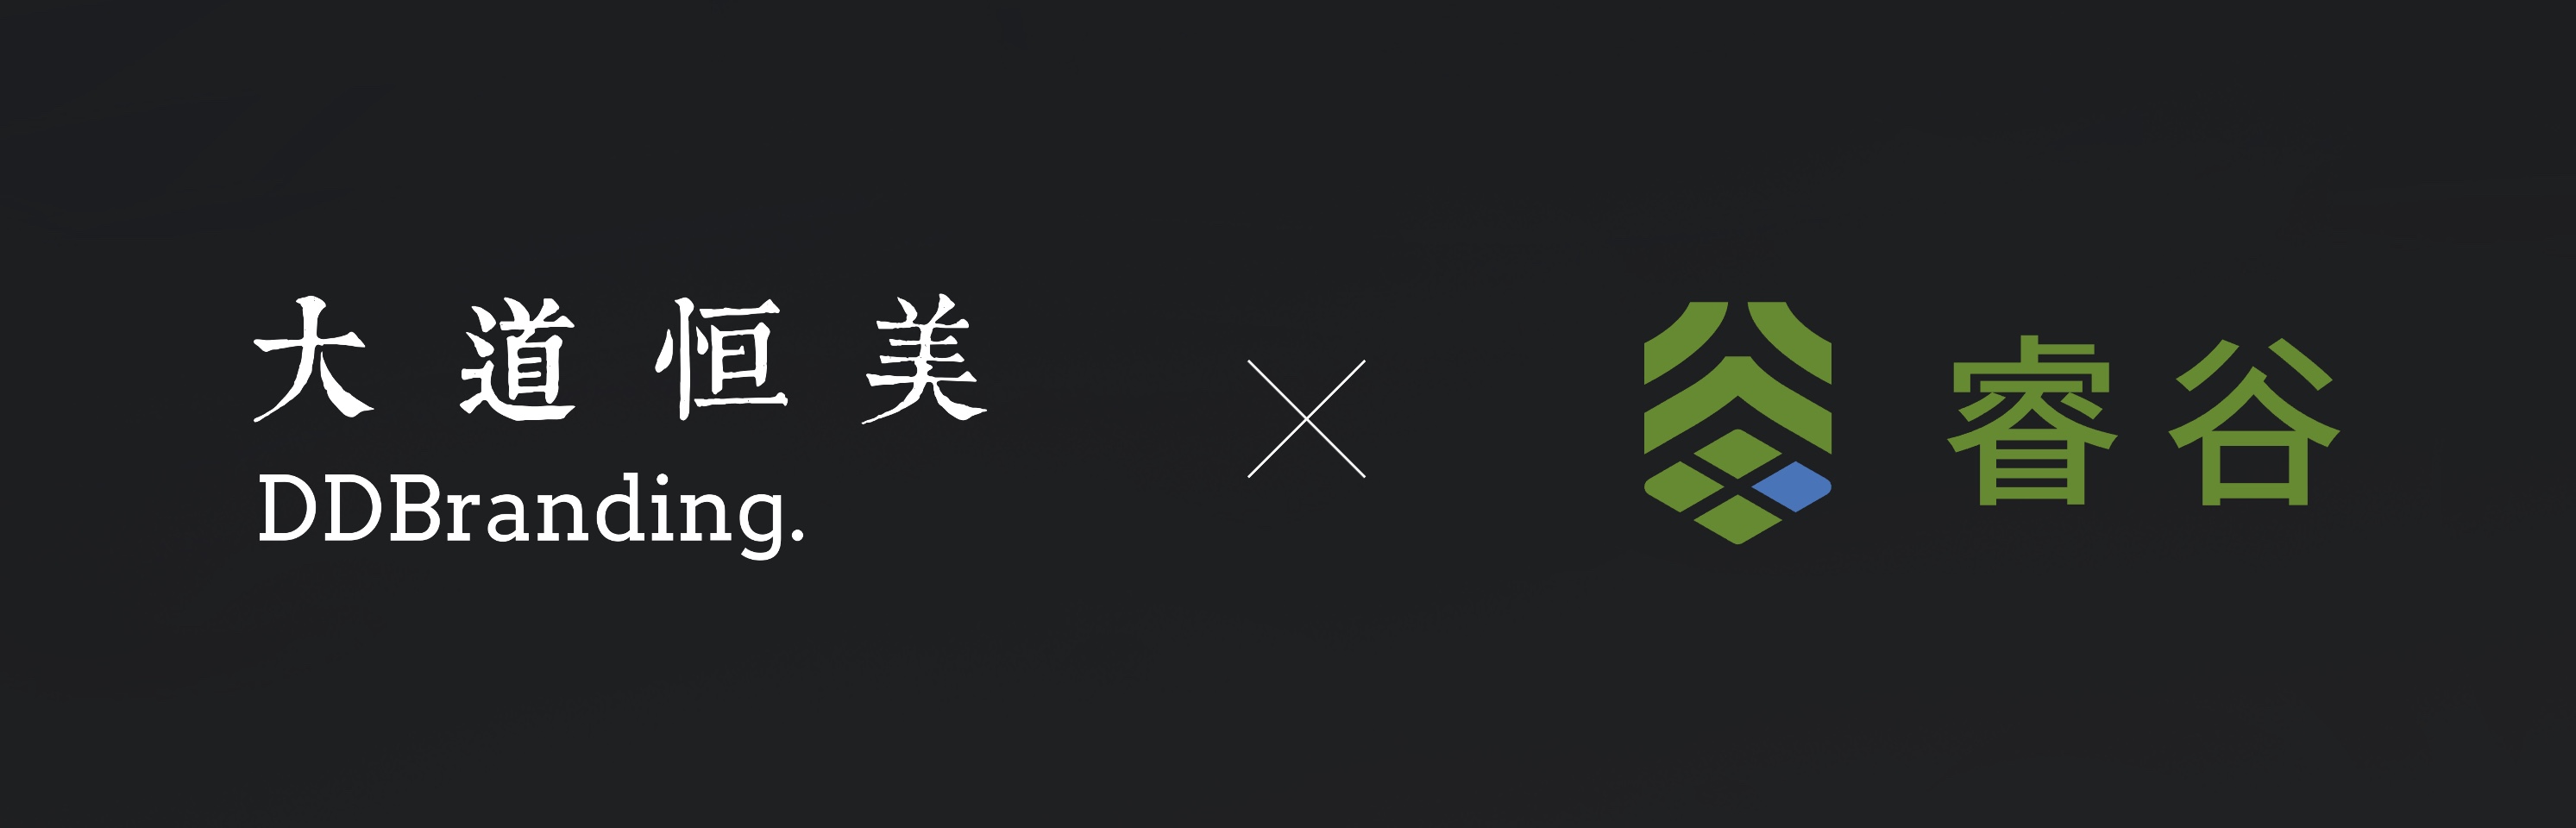 大道恒美X睿谷生态logo.jpg